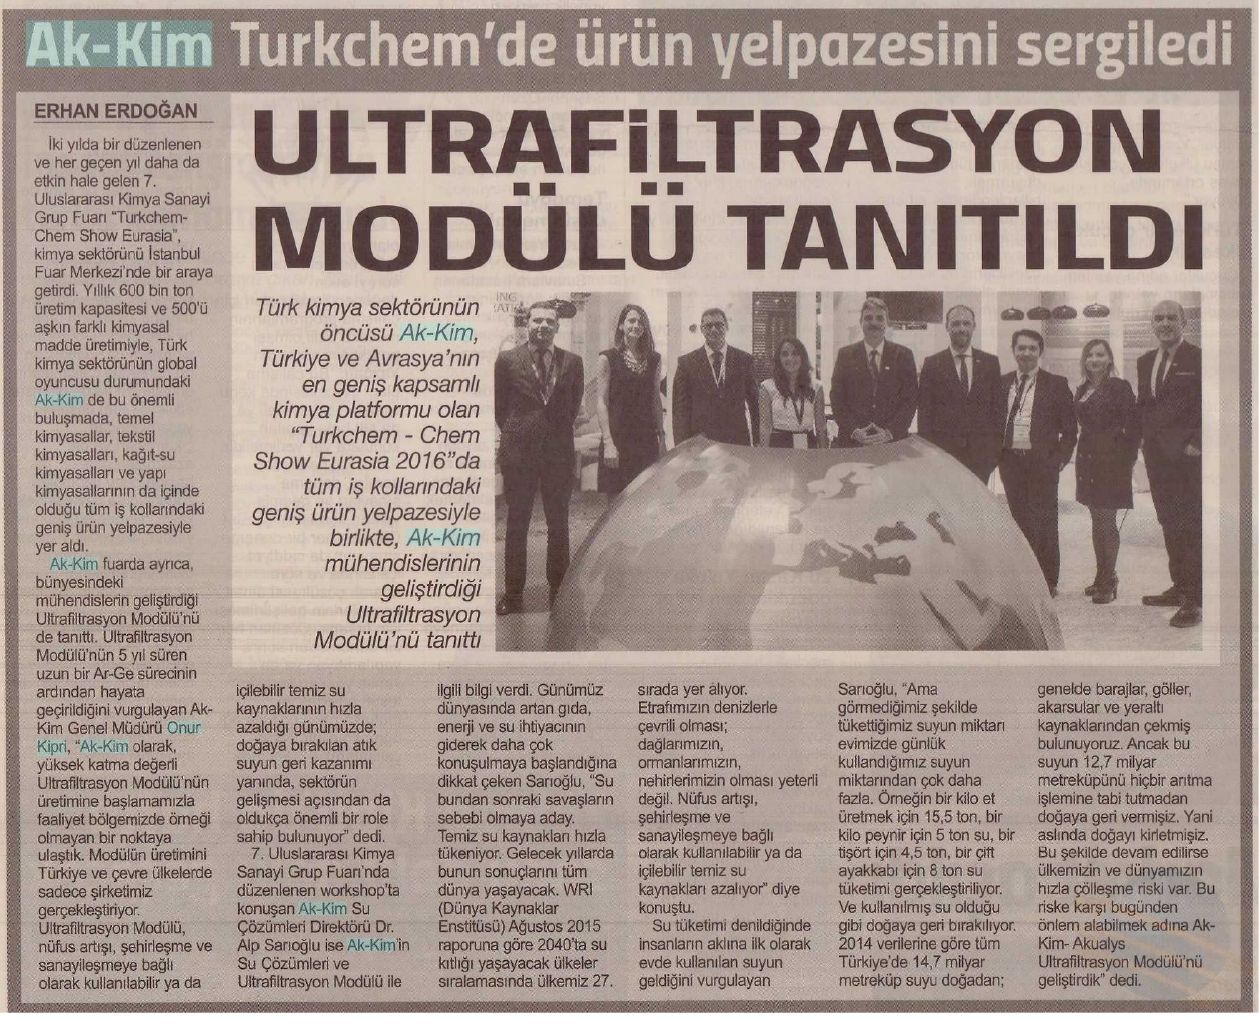 Akkim Turkchem’de ürün yelpazesini sergiledi / Yalova Hayat – 21 Kasım 2016